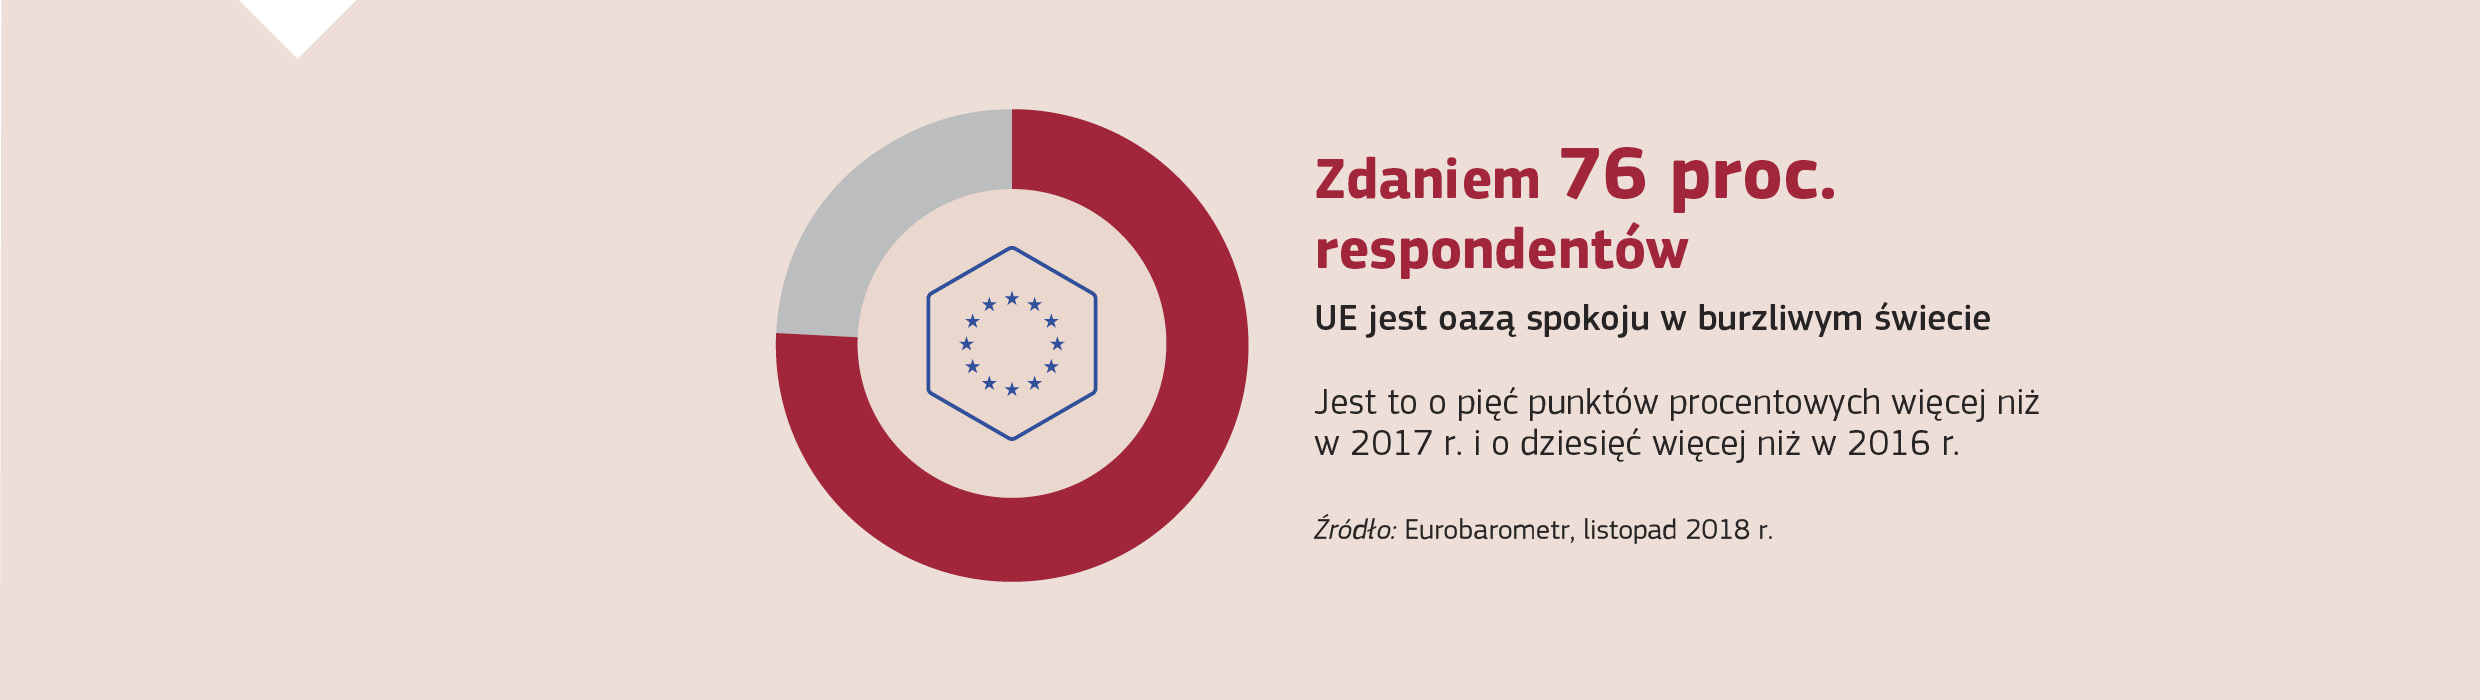 Zdaniem 76 proc. respondentów UE jest oazą spokoju w burzliwym świecie. Jest to o pięć punktów procentowych więcej niż w 2017 r. i o dziesięć niż w 2016 r.